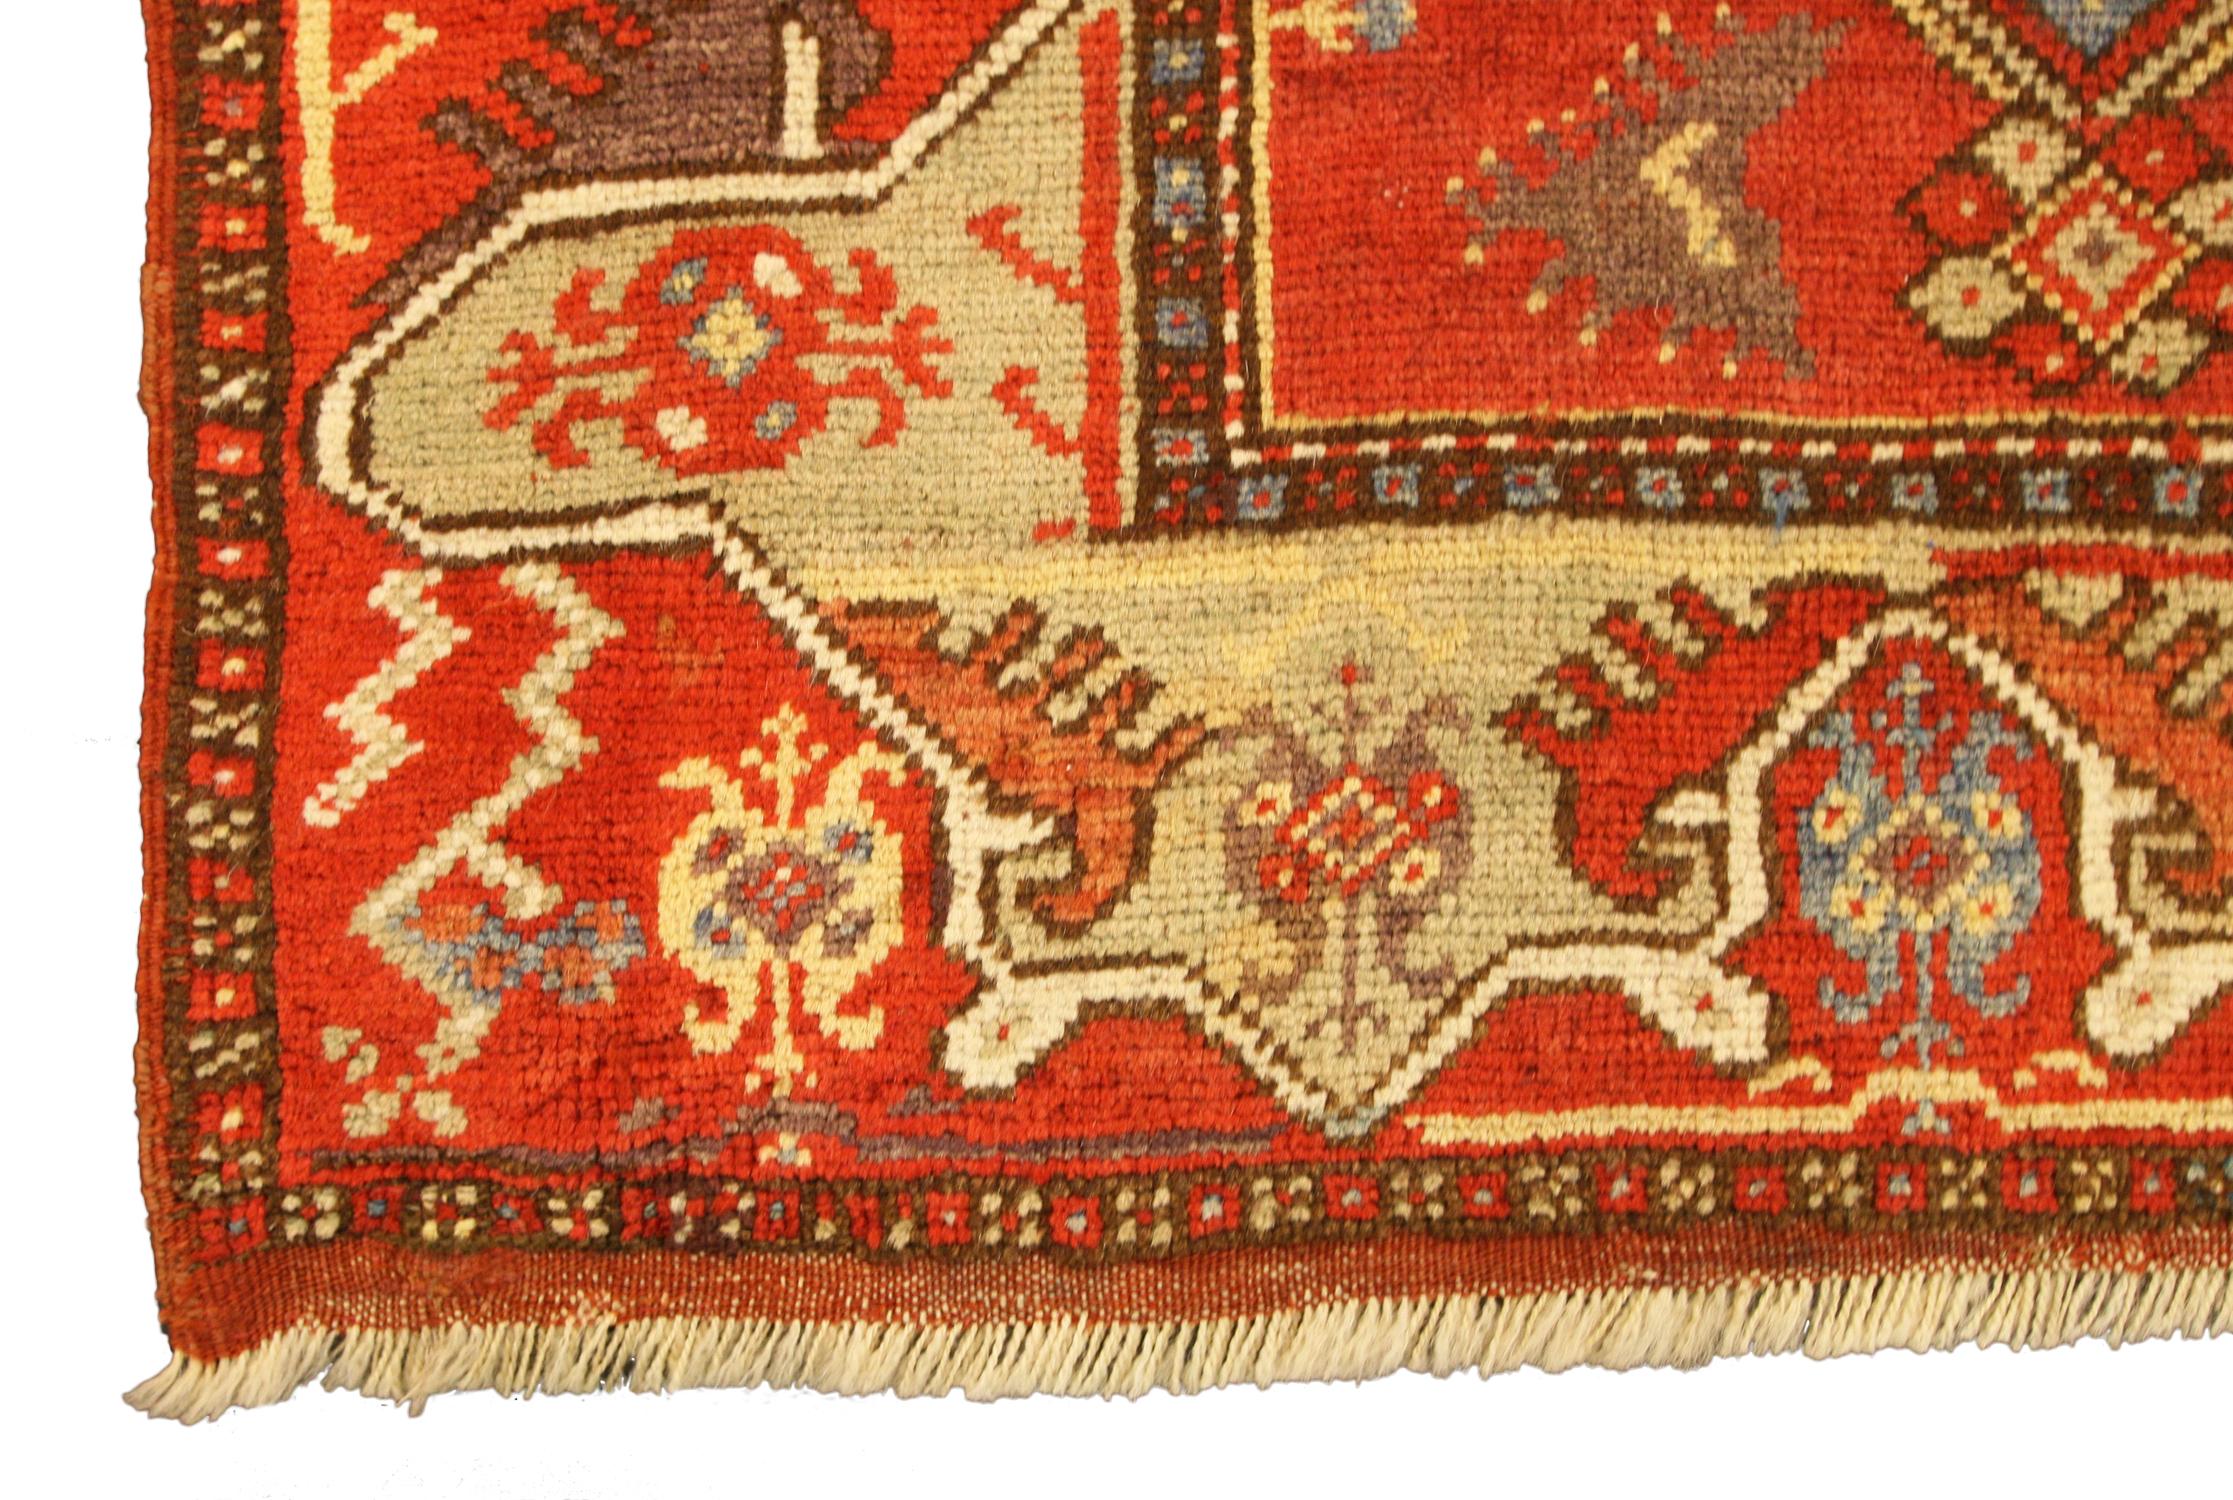 Es handelt sich um einen antiken Melas-Teppich, der Ende des 19. Jahrhunderts in der Türkei gewebt wurde und 118 x 80 cm groß ist. Das Feld besteht aus zwei großformatigen Medaillons auf rotem Hintergrund. Die Umrandung besteht aus einem